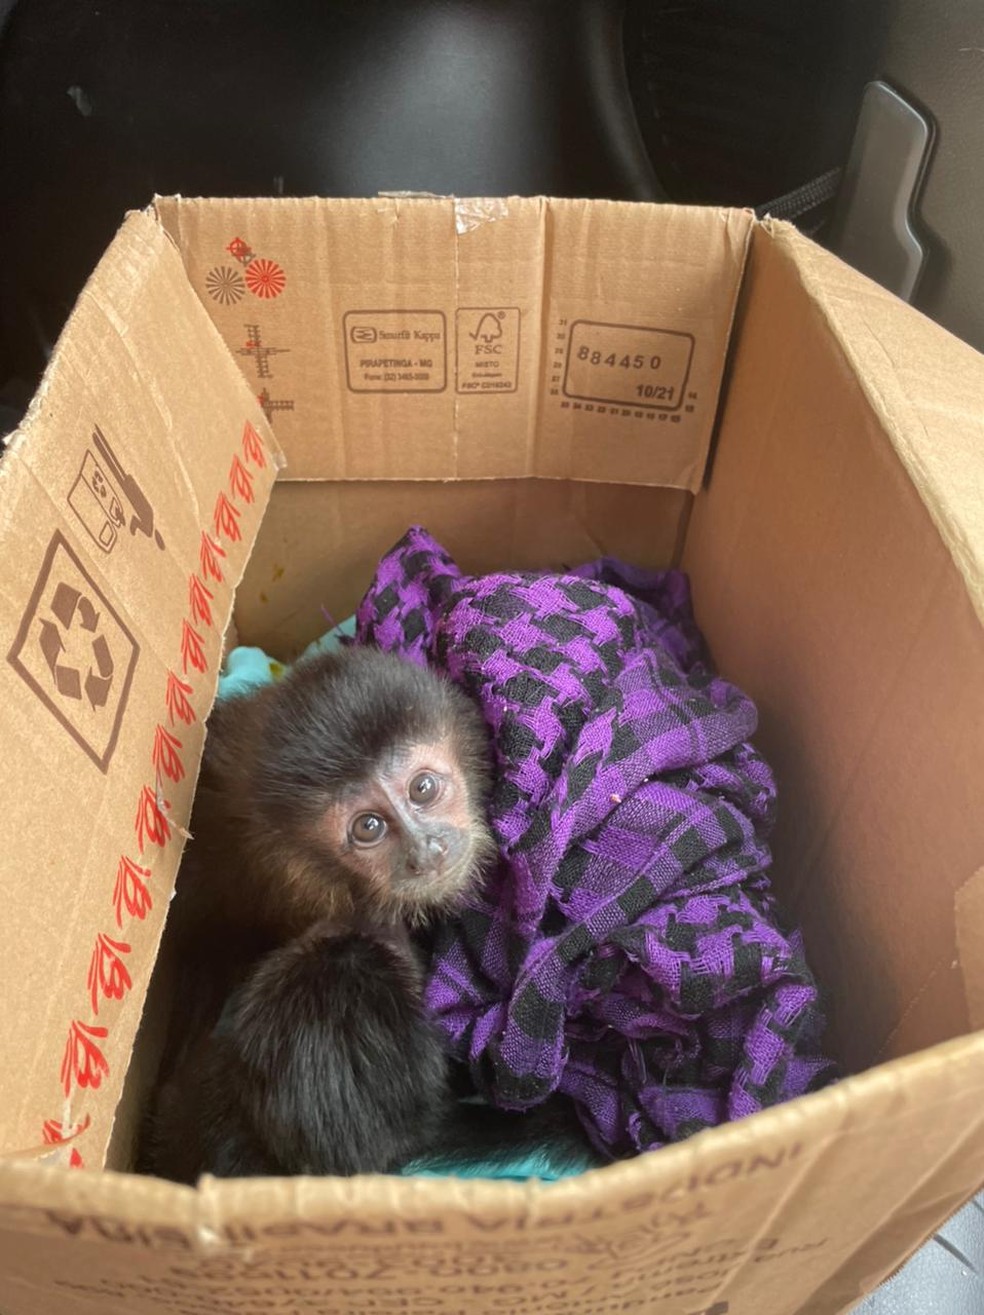 Macacos apreendidos em porta-malas de carro tinham parte de cordão umbilical, diz veterinário — Foto: Arquivo pessoal